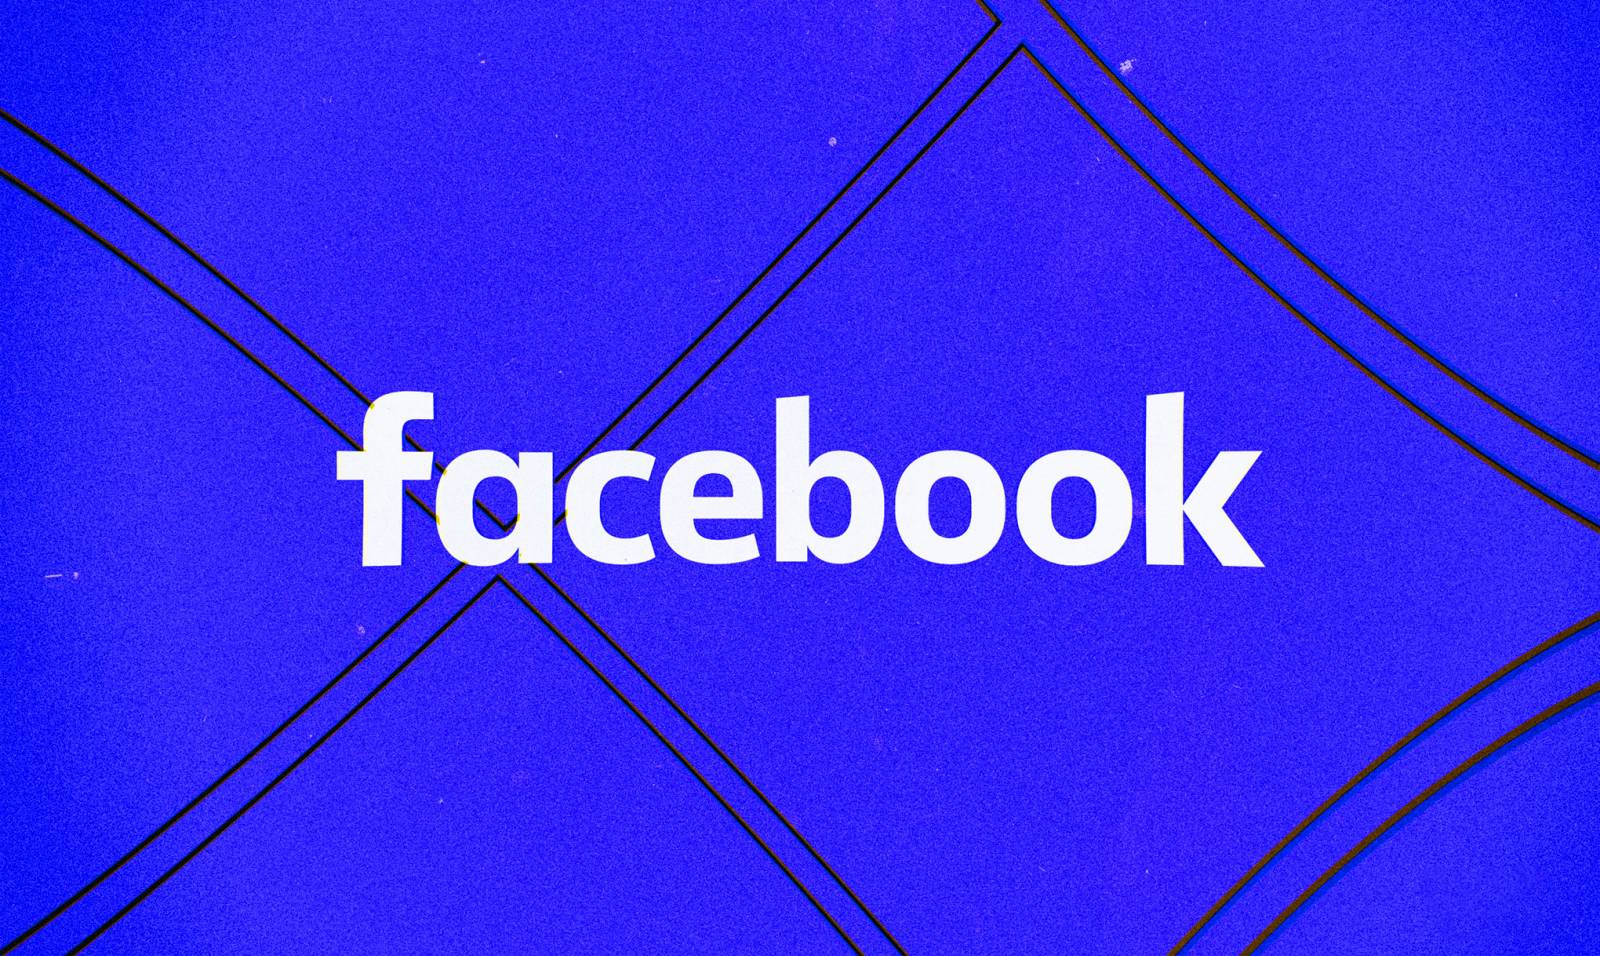 Facebook a implinit 17 ani, ce spune Mark Zuckeberg despre Aniversare